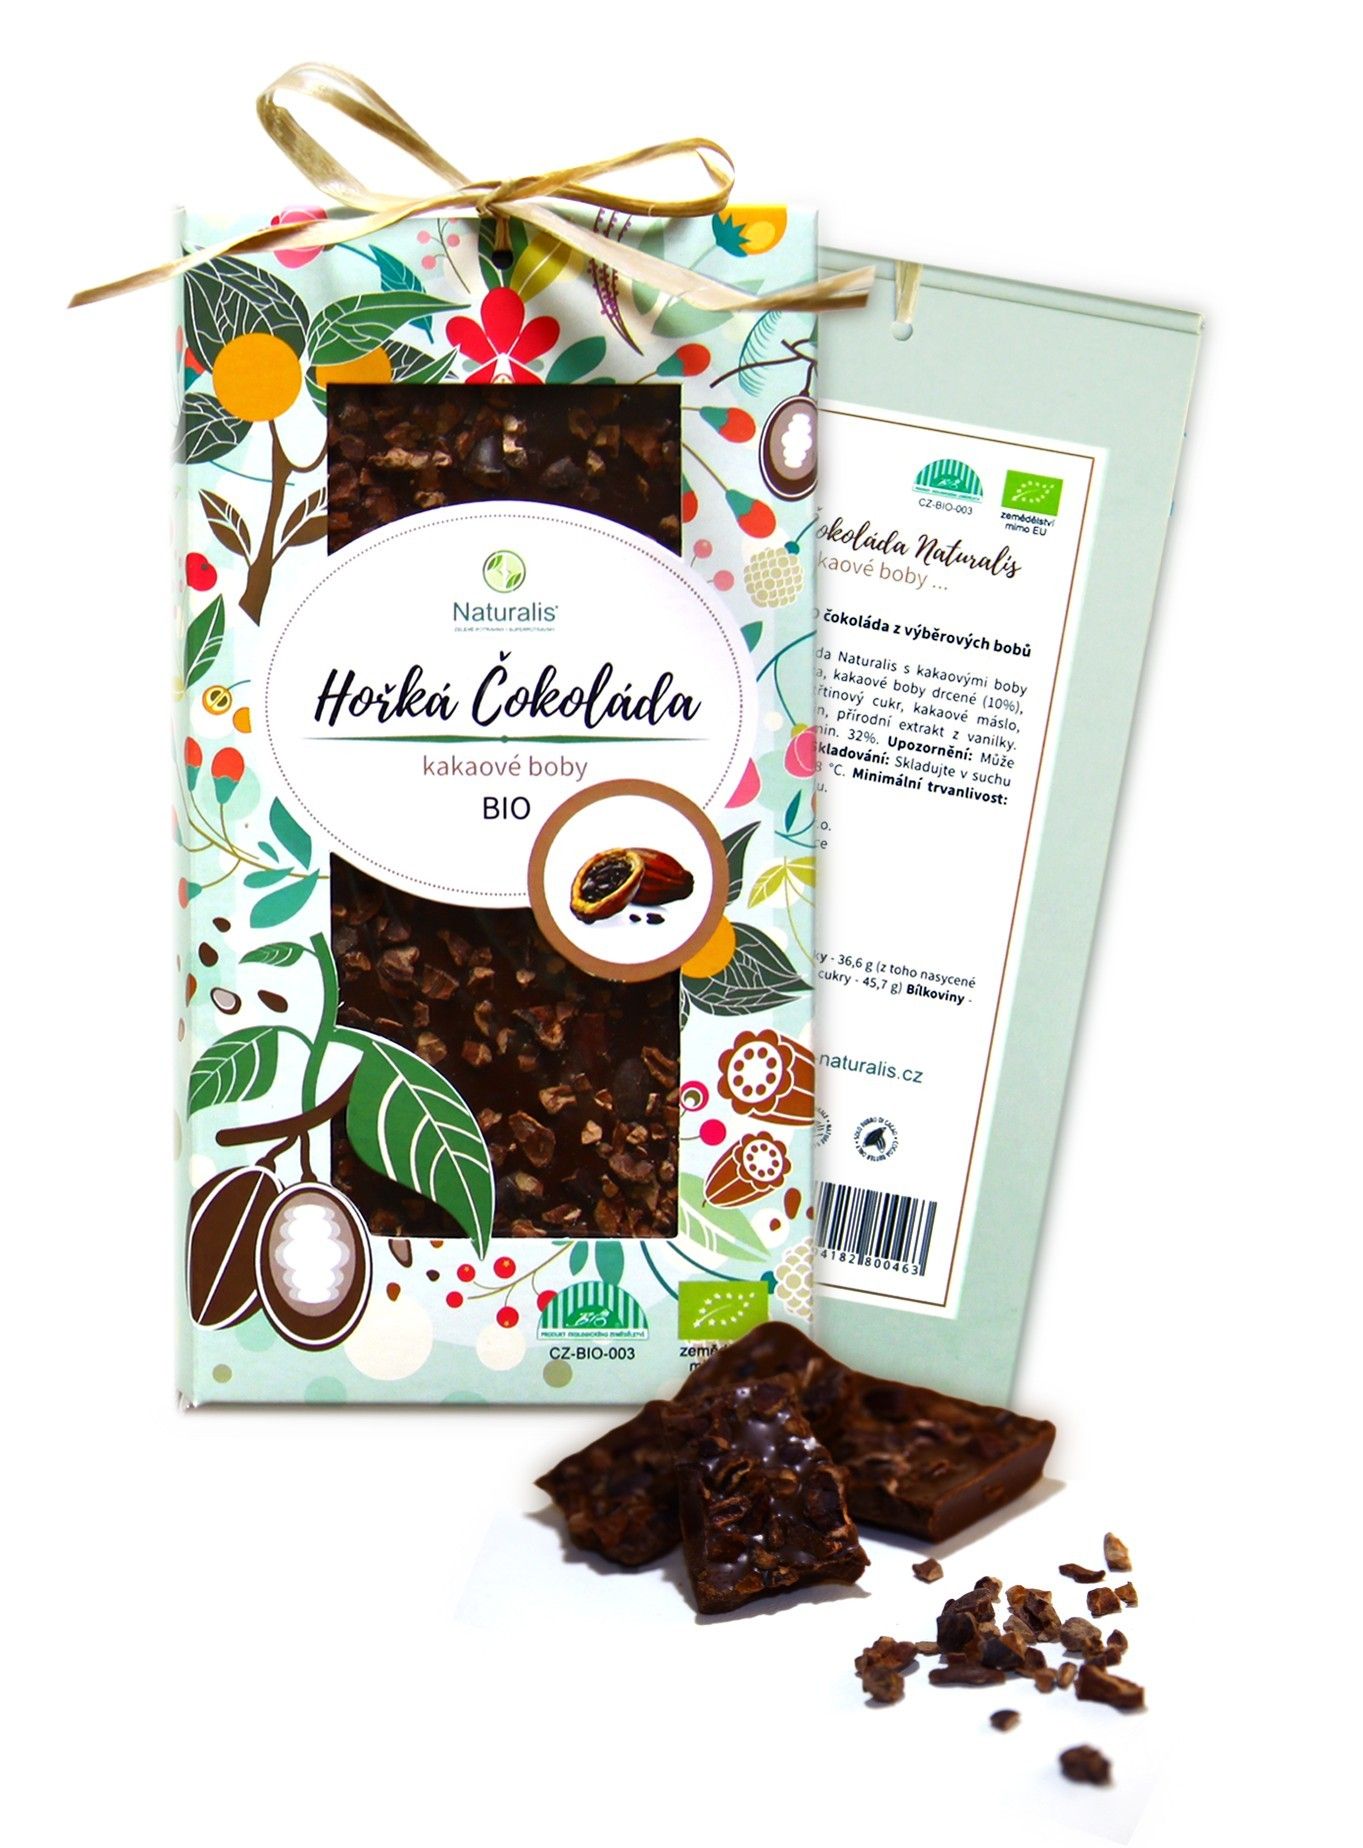 Naturalis BIO Čokoláda Naturalis s kakaovými boby - 80g + prodloužená záruka na vrácení zboží do 100